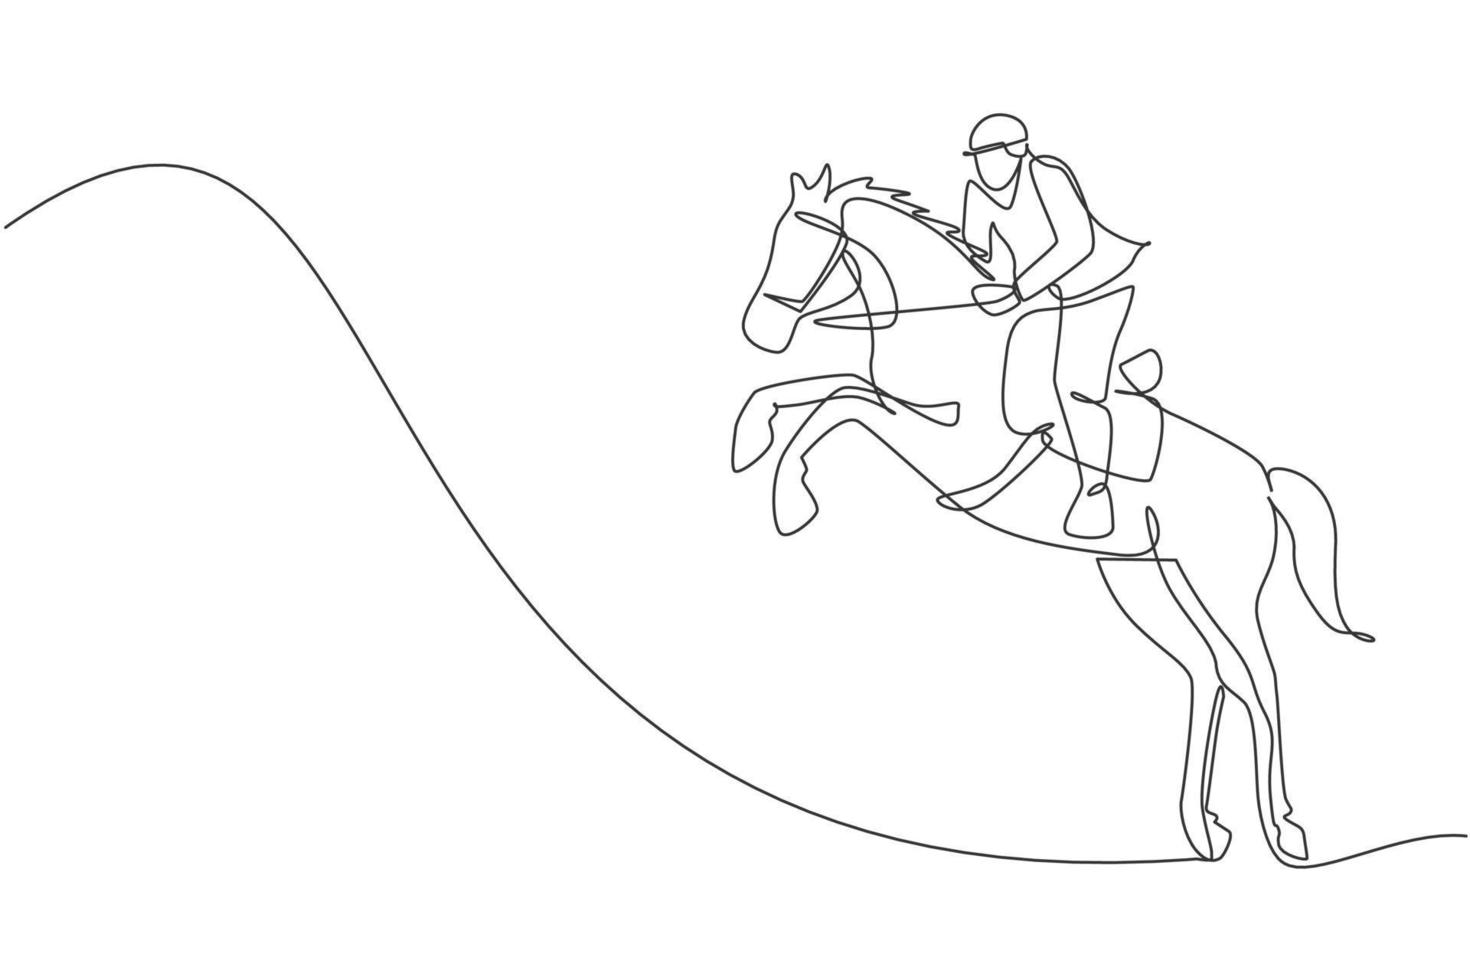 uma linha contínua desenhando um jovem cavaleiro em ação de salto. treinamento equino na pista de corrida. conceito de competição de esporte equestre. gráfico de ilustração vetorial design de desenho de linha única dinâmica vetor